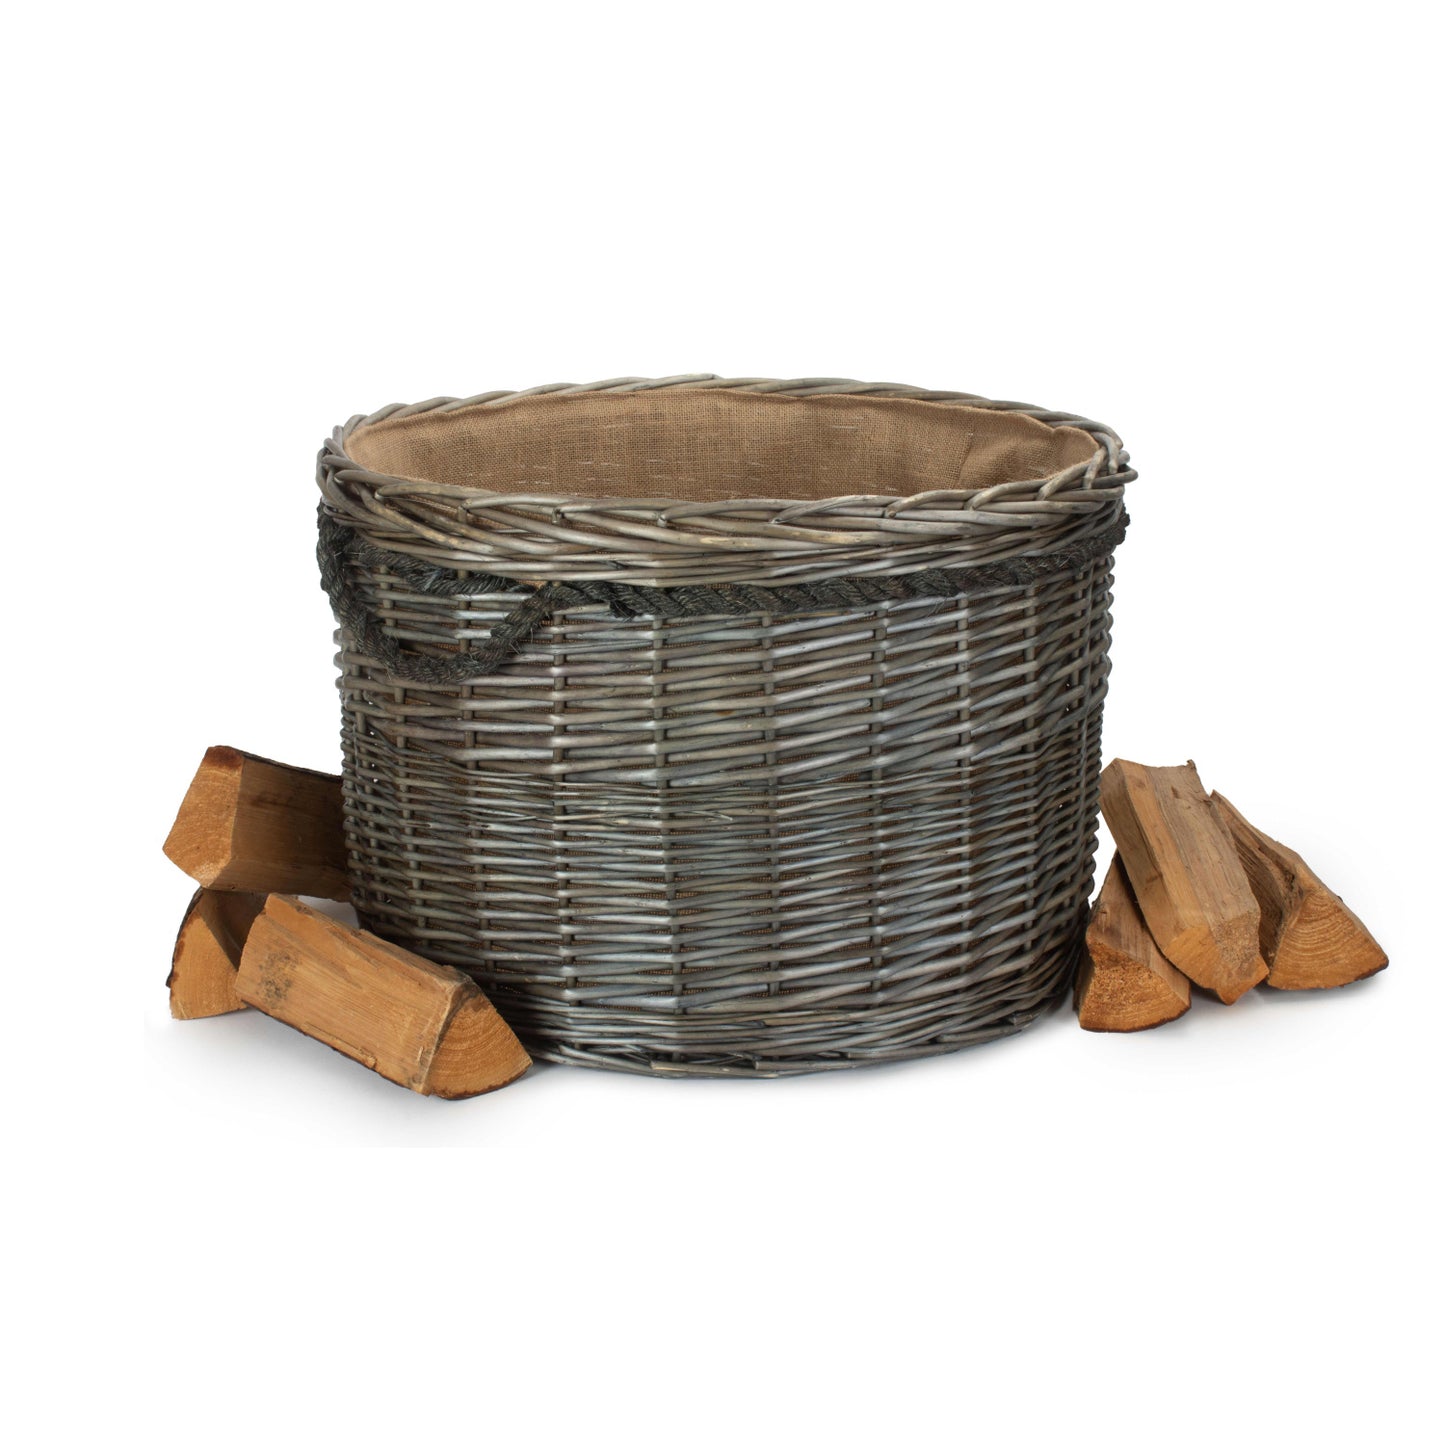 Size 3 Antique Wash Round Storage Basket